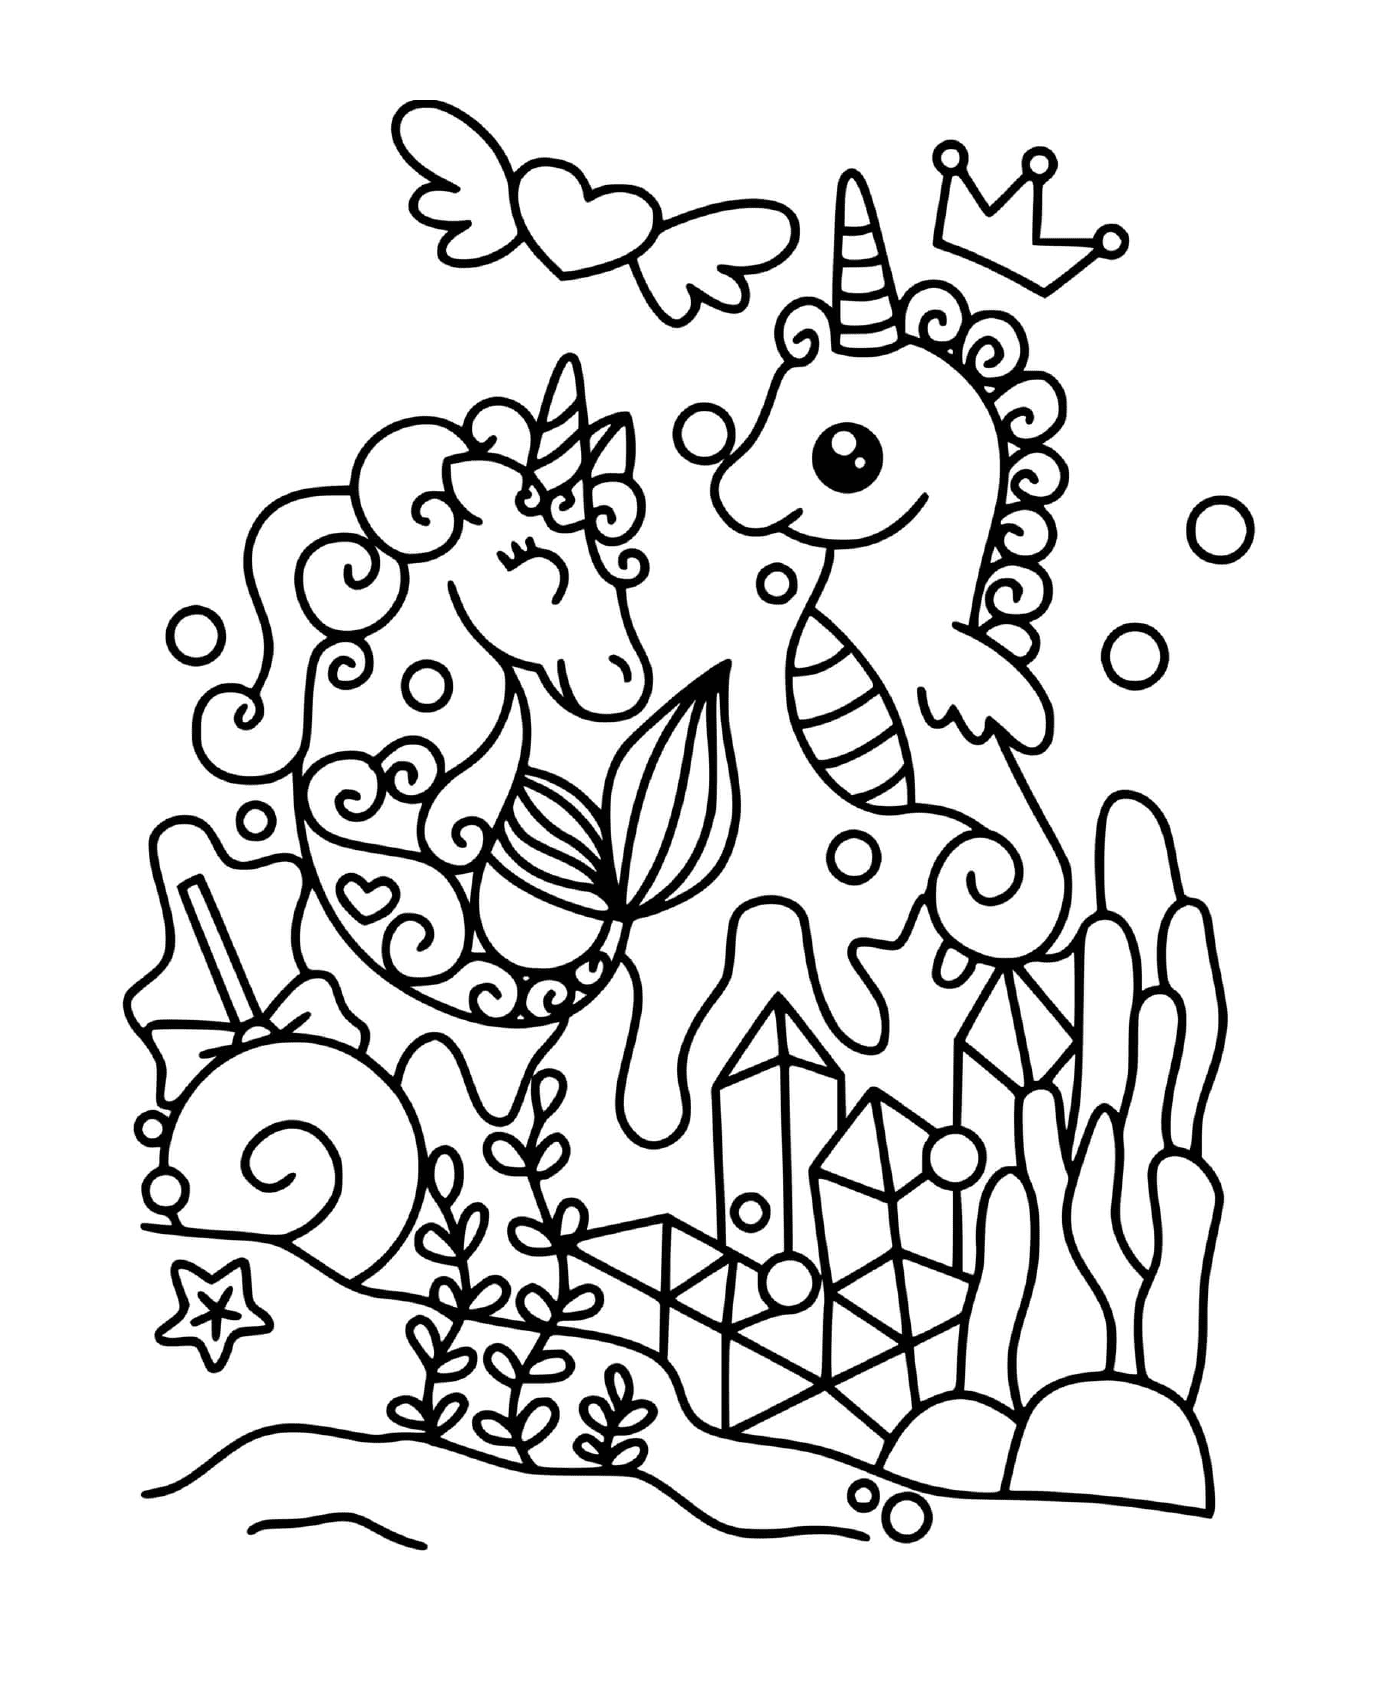  Unicórnio e cavalo marinho mágico 